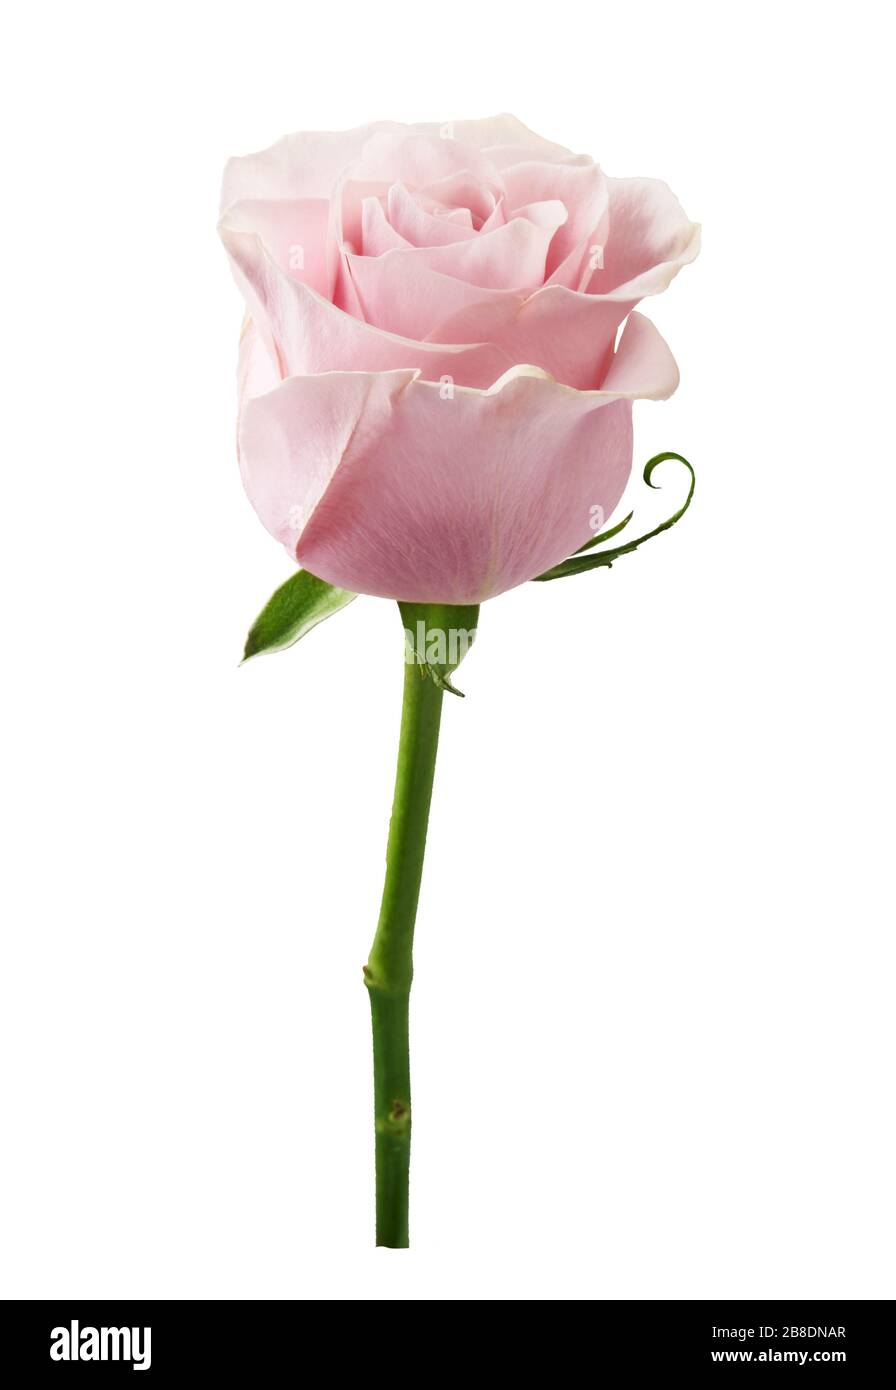 Schöne Rosenblüblume isoliert auf weißem Hintergrund. Rosenknospe an einem grünen Stamm. Stockfoto